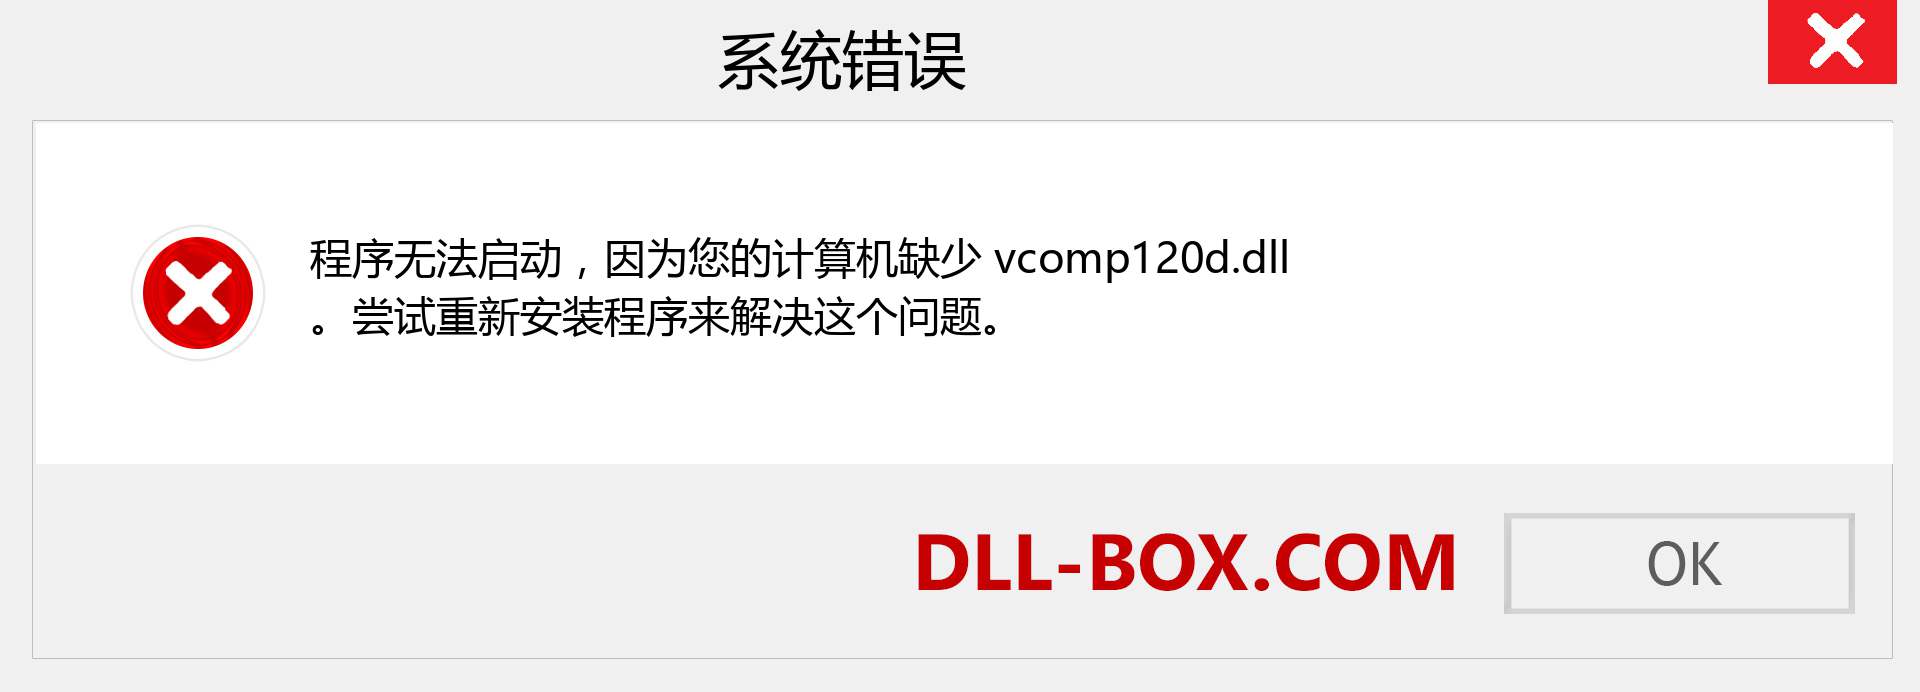 vcomp120d.dll 文件丢失？。 适用于 Windows 7、8、10 的下载 - 修复 Windows、照片、图像上的 vcomp120d dll 丢失错误